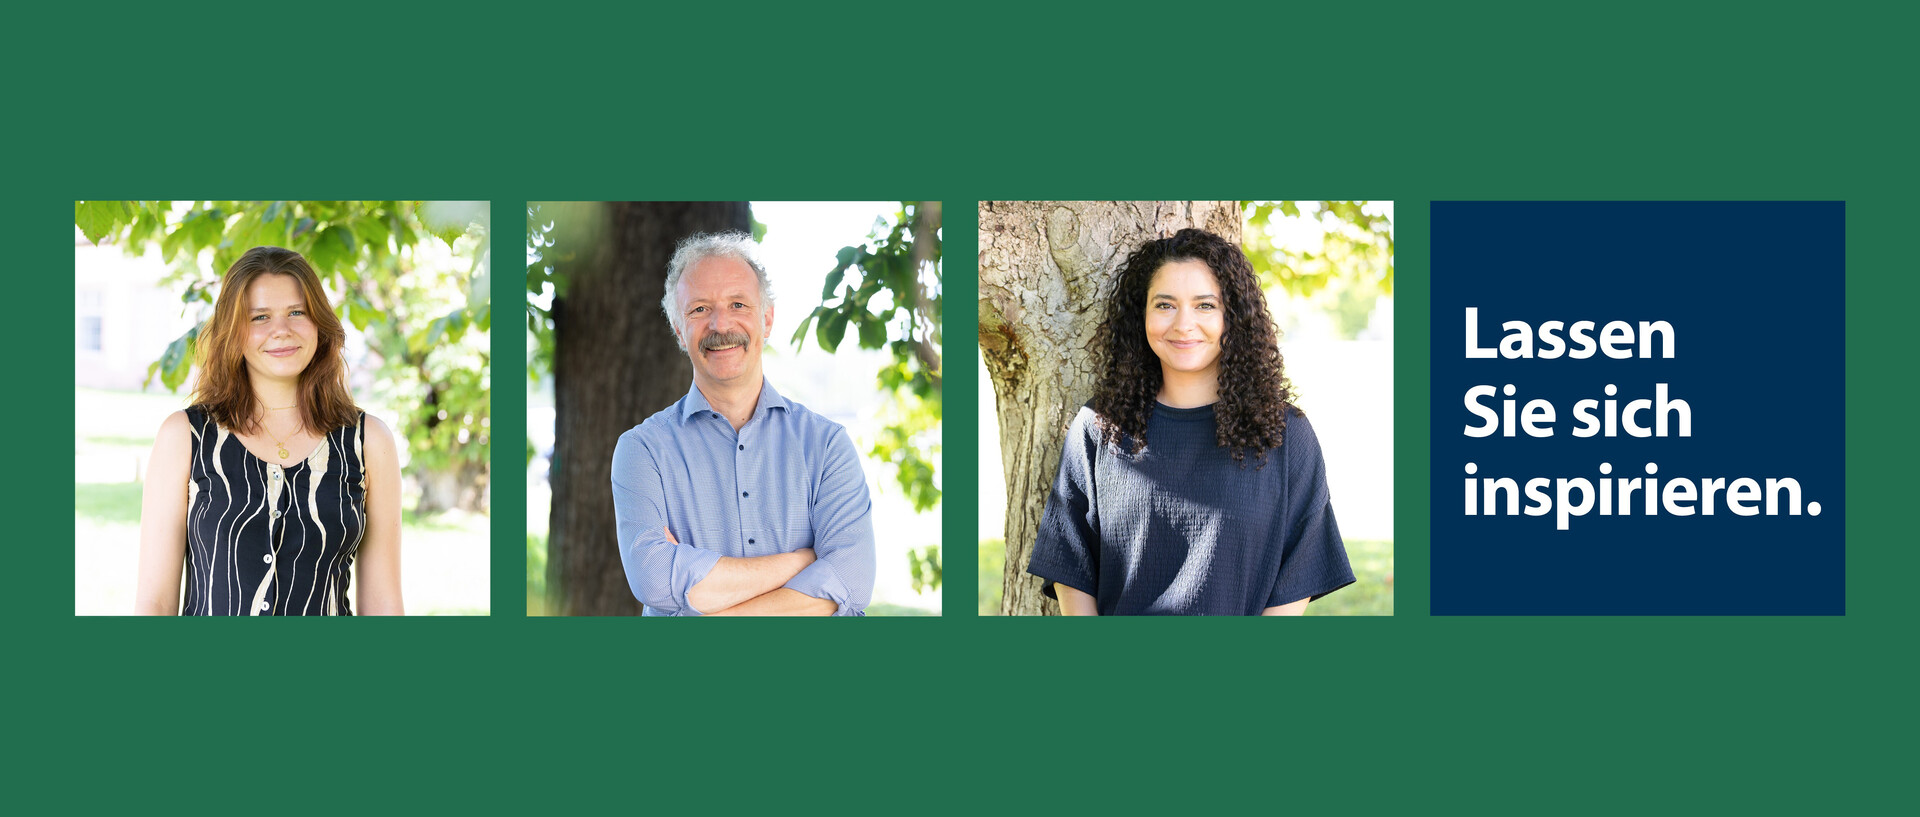 Drei Portraits von unterschiedlich an der Uni Mannheim beschäftigten Personen sind nebeneinander vor einem grünen Hintergrund aufegreiht. Daneben steht der Slogan "Lassen Sie sich inspirieren".